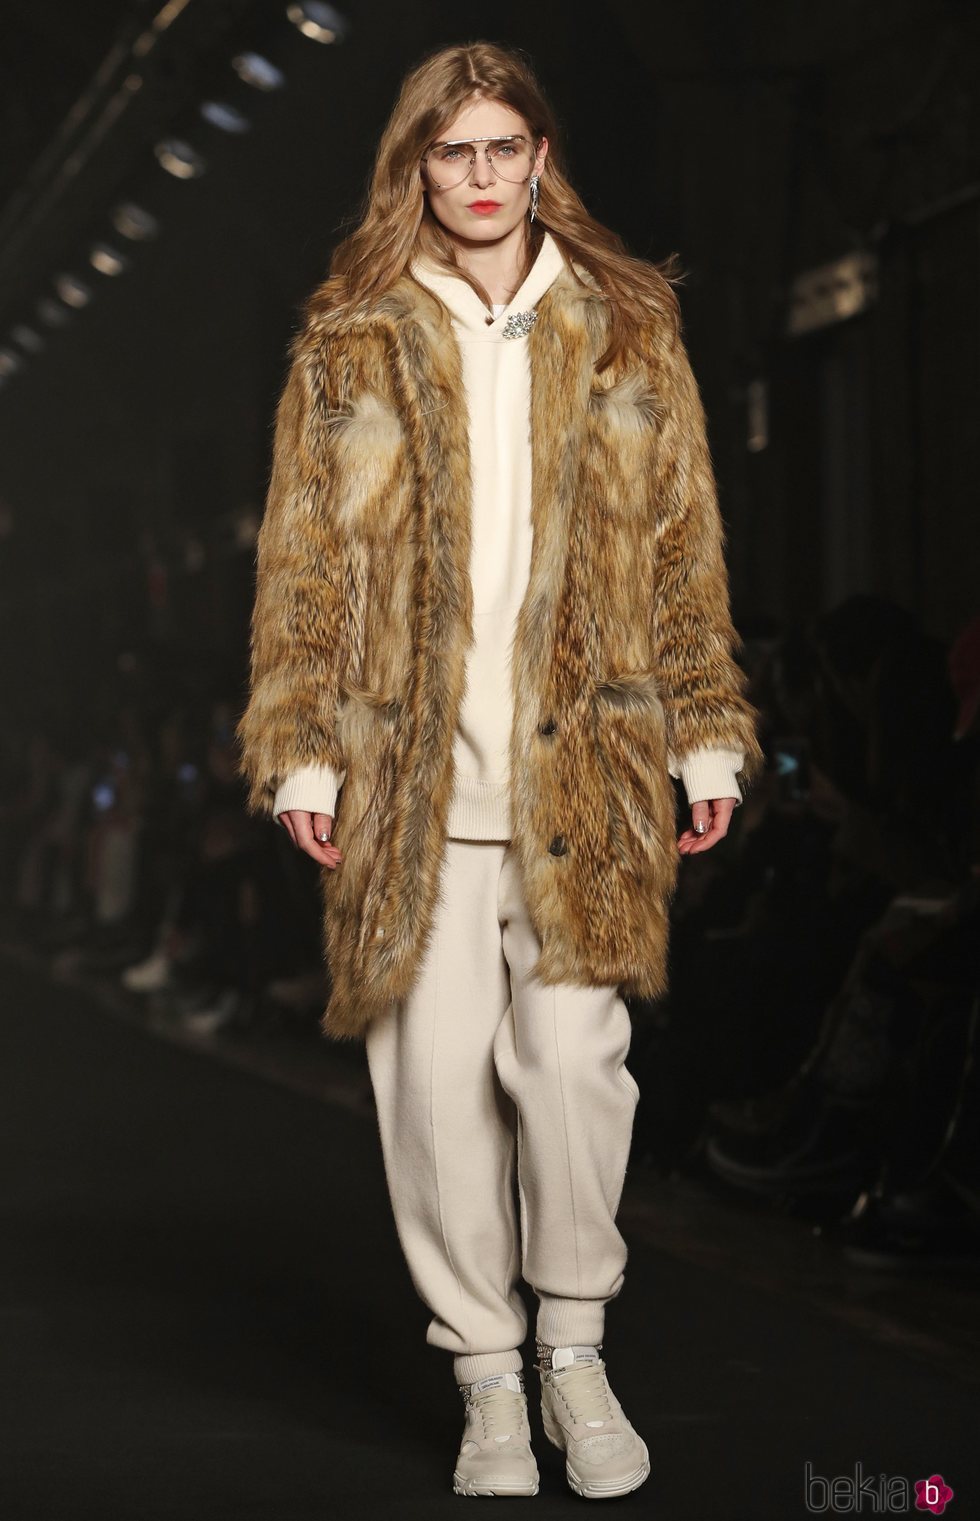 Modelo luciendo abrigo de pelo tostado de Zadig&Voltaire en la Fashion Week de Nueva York 2019